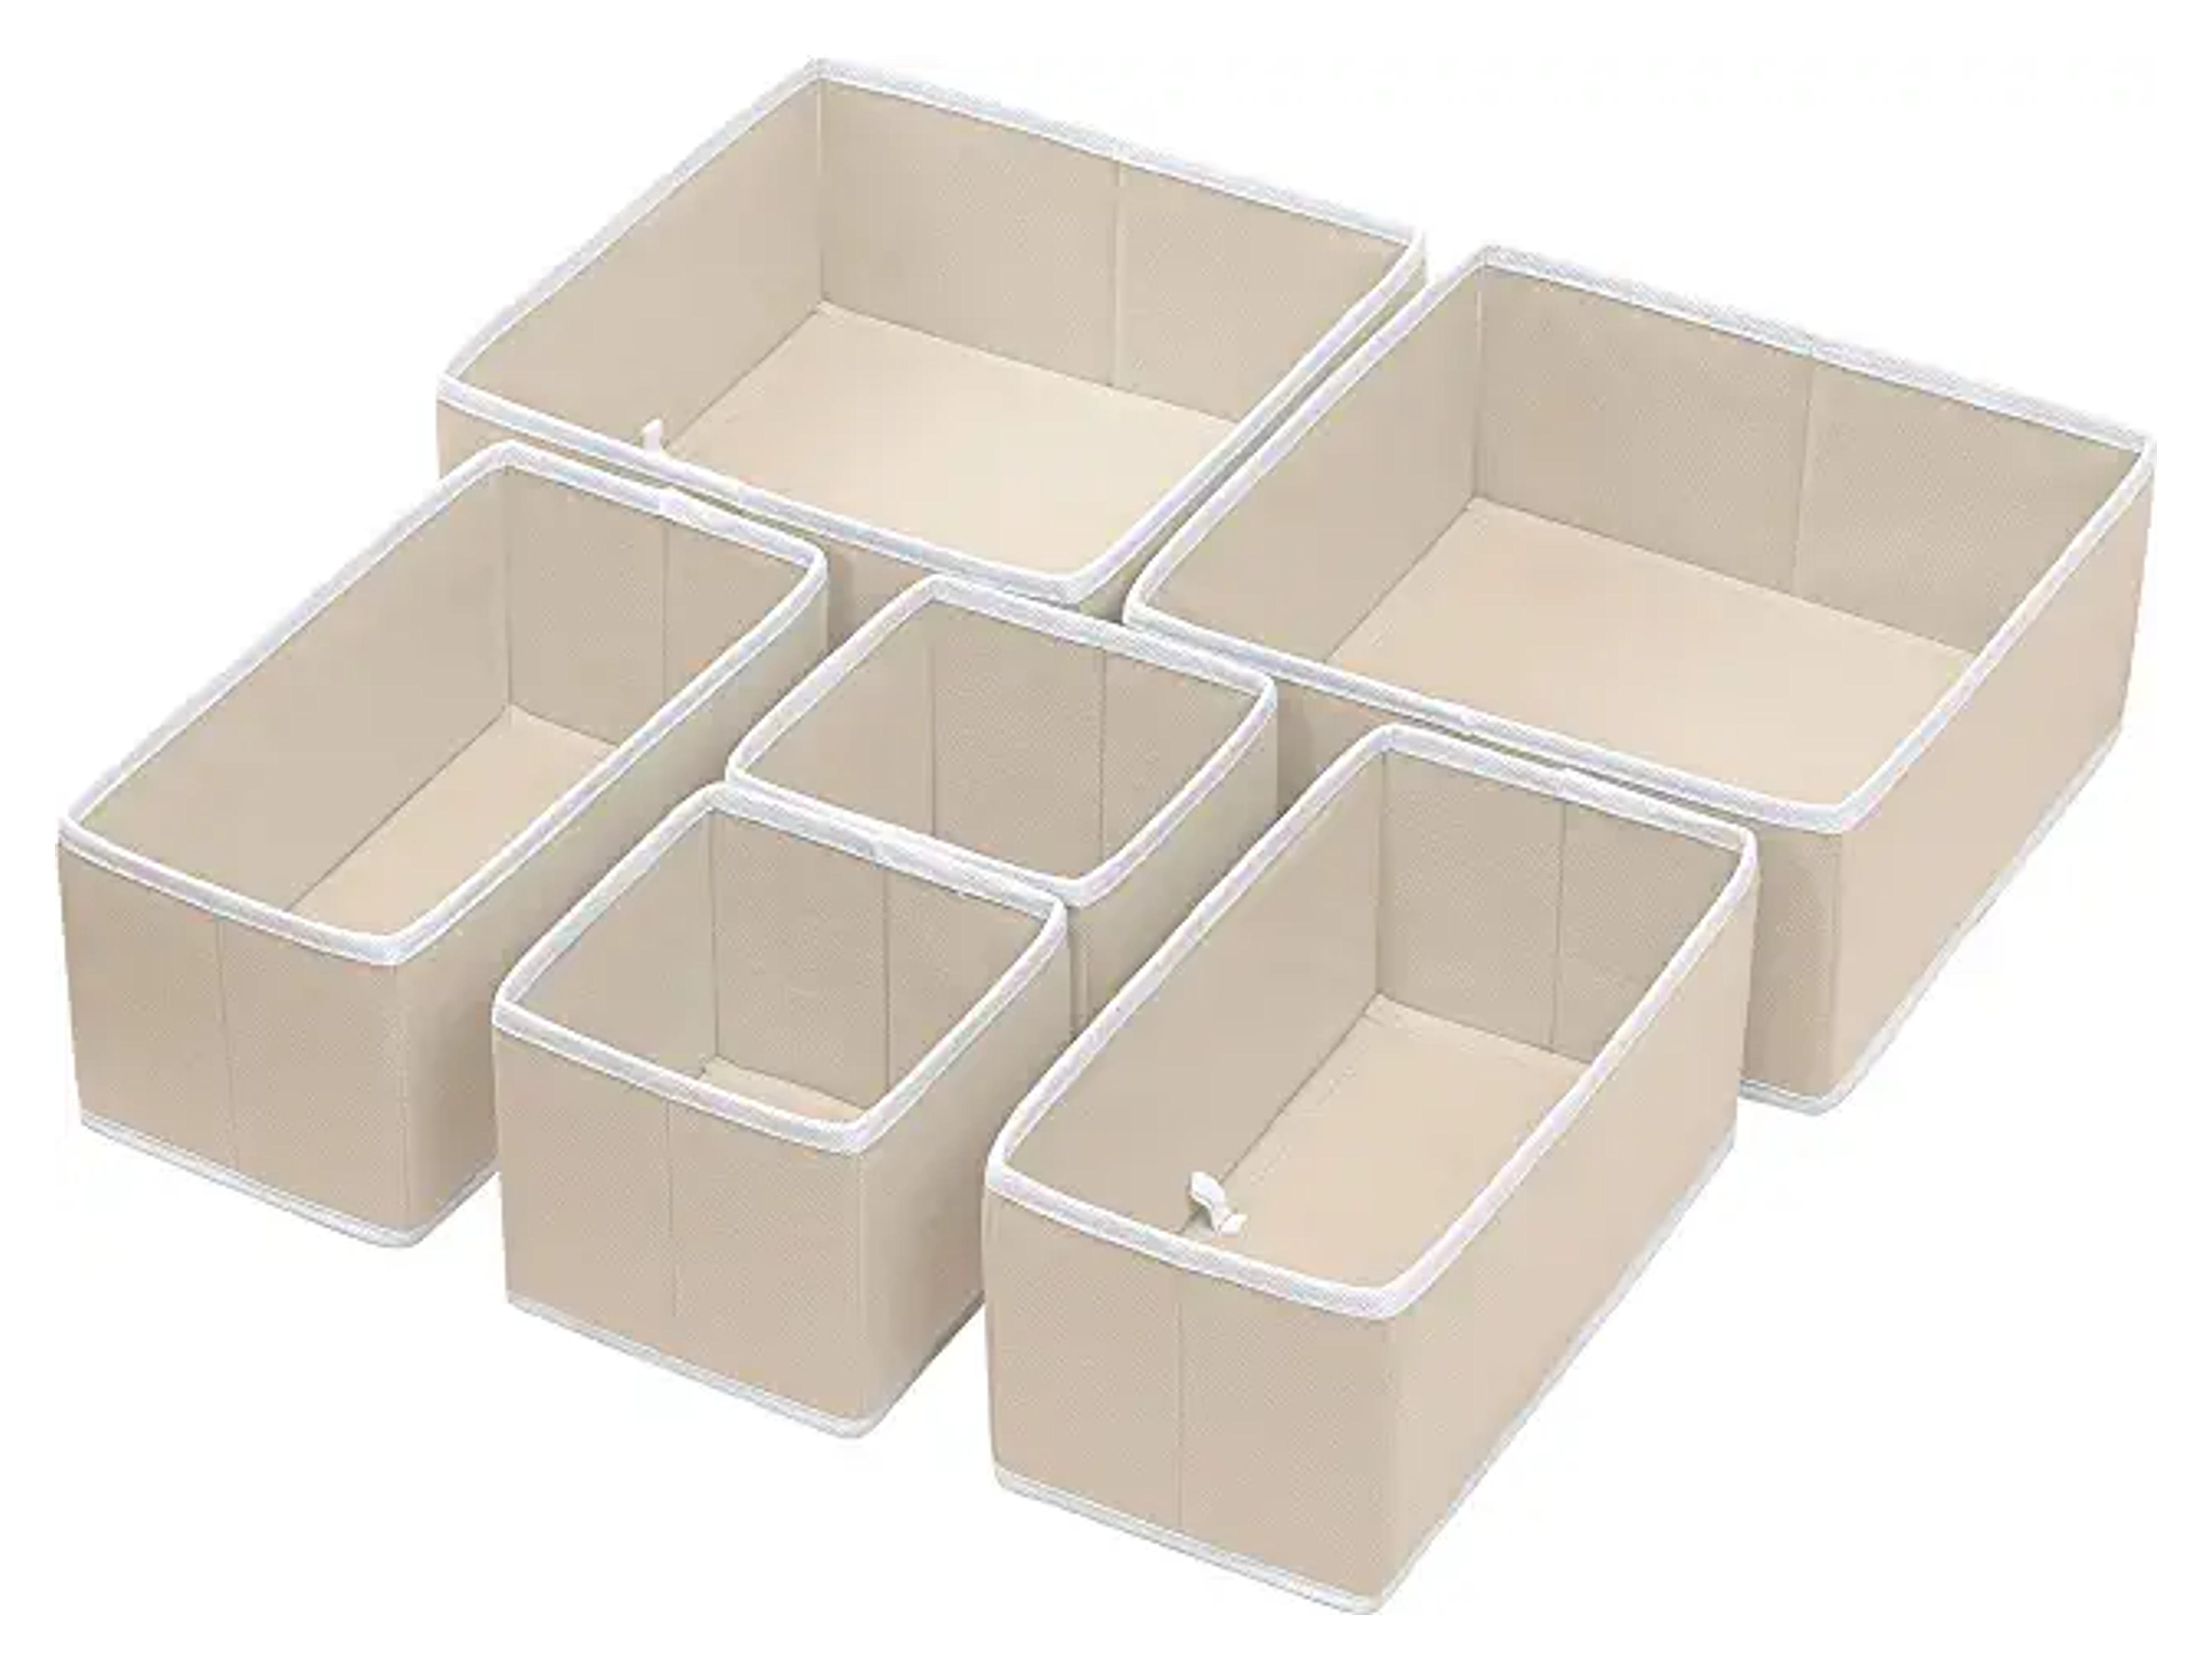 Amazon.com: Simple Houseware Foldable Cloth Storage Box Closet Dresser Drawer Divider Organizer Basket Bins for Underwear Bras, Beige (Set of 6) : Home & Kitchen